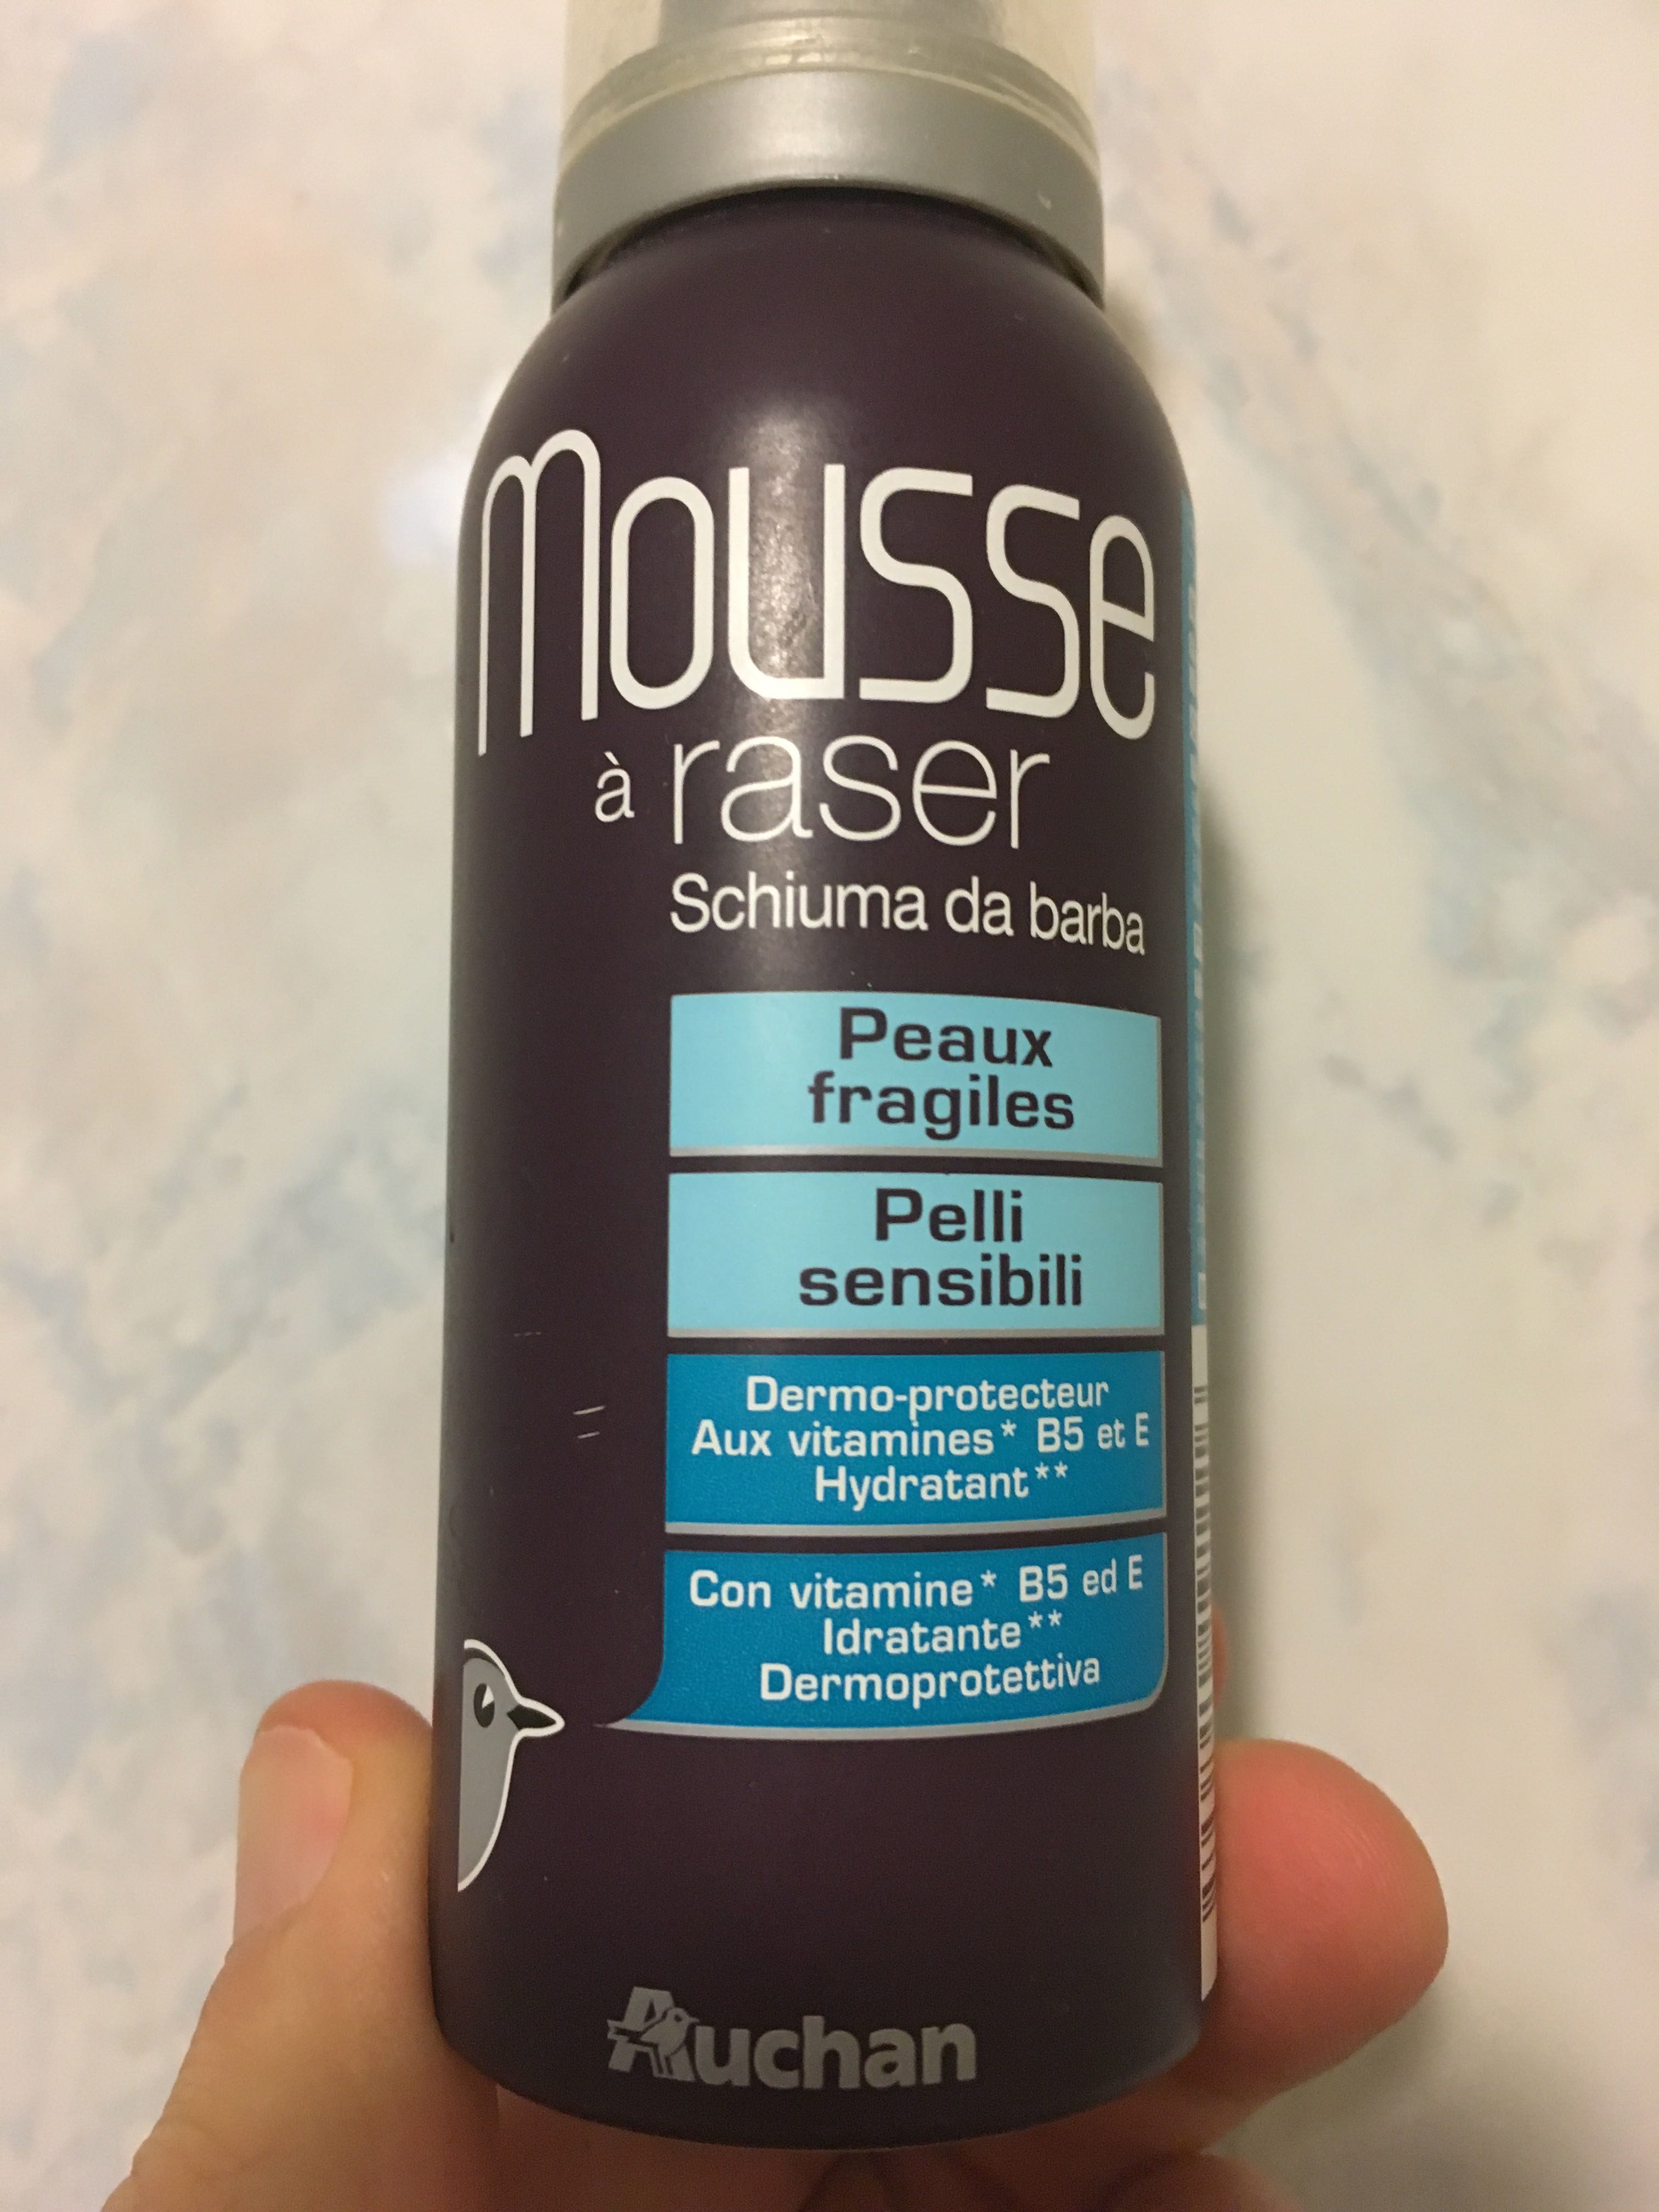 Mousse a raser peaux fragiles - Produit - fr